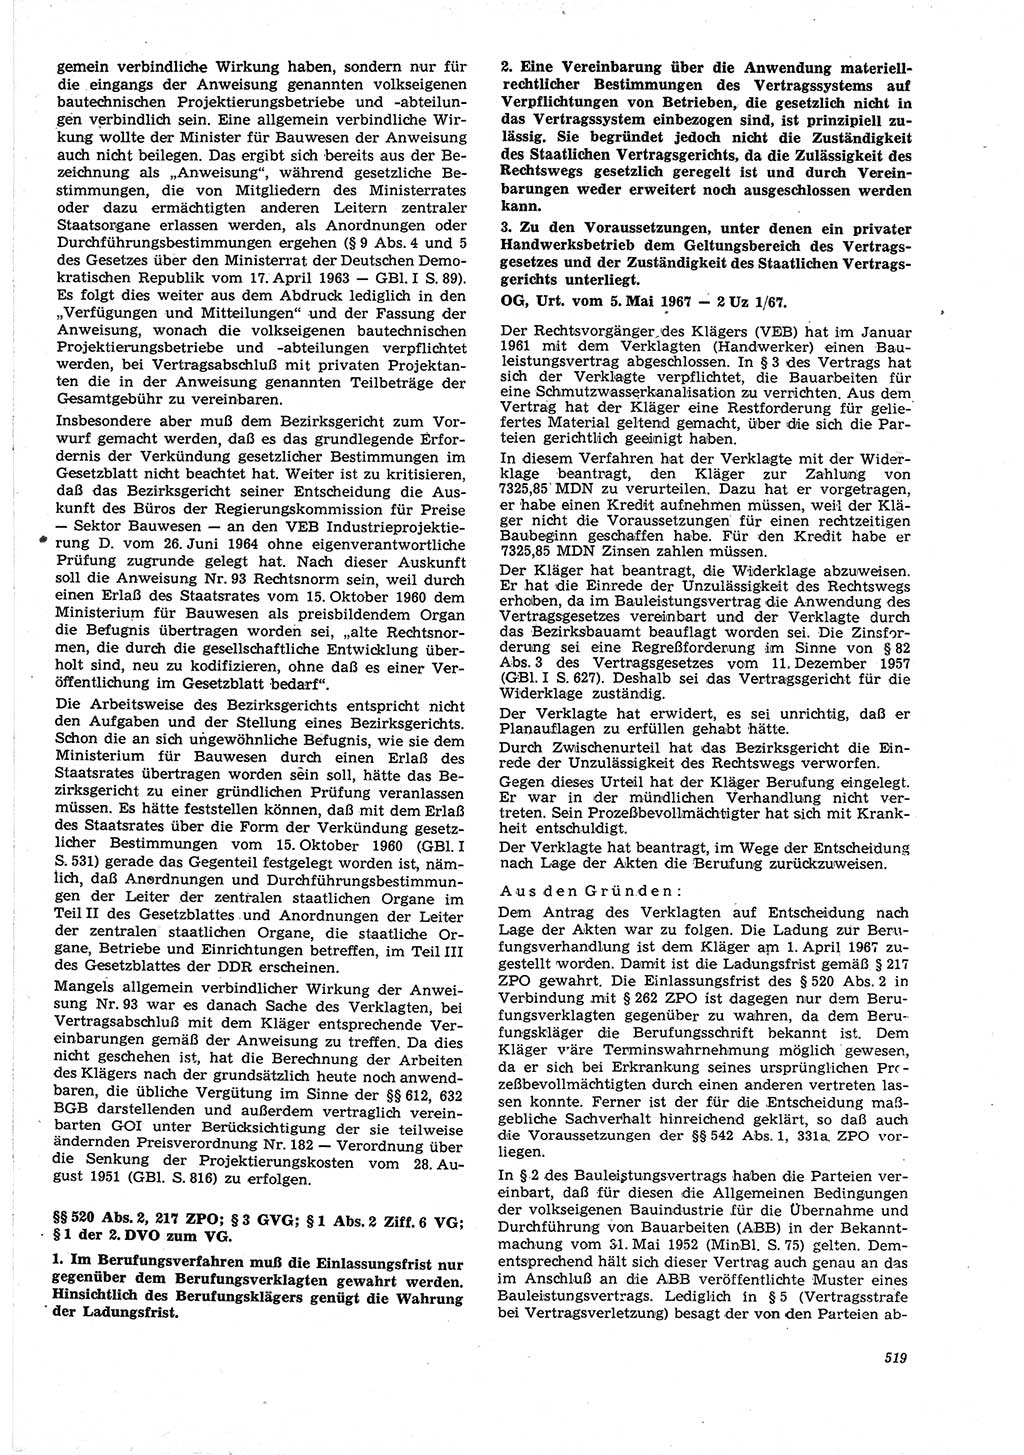 Neue Justiz (NJ), Zeitschrift für Recht und Rechtswissenschaft [Deutsche Demokratische Republik (DDR)], 21. Jahrgang 1967, Seite 519 (NJ DDR 1967, S. 519)